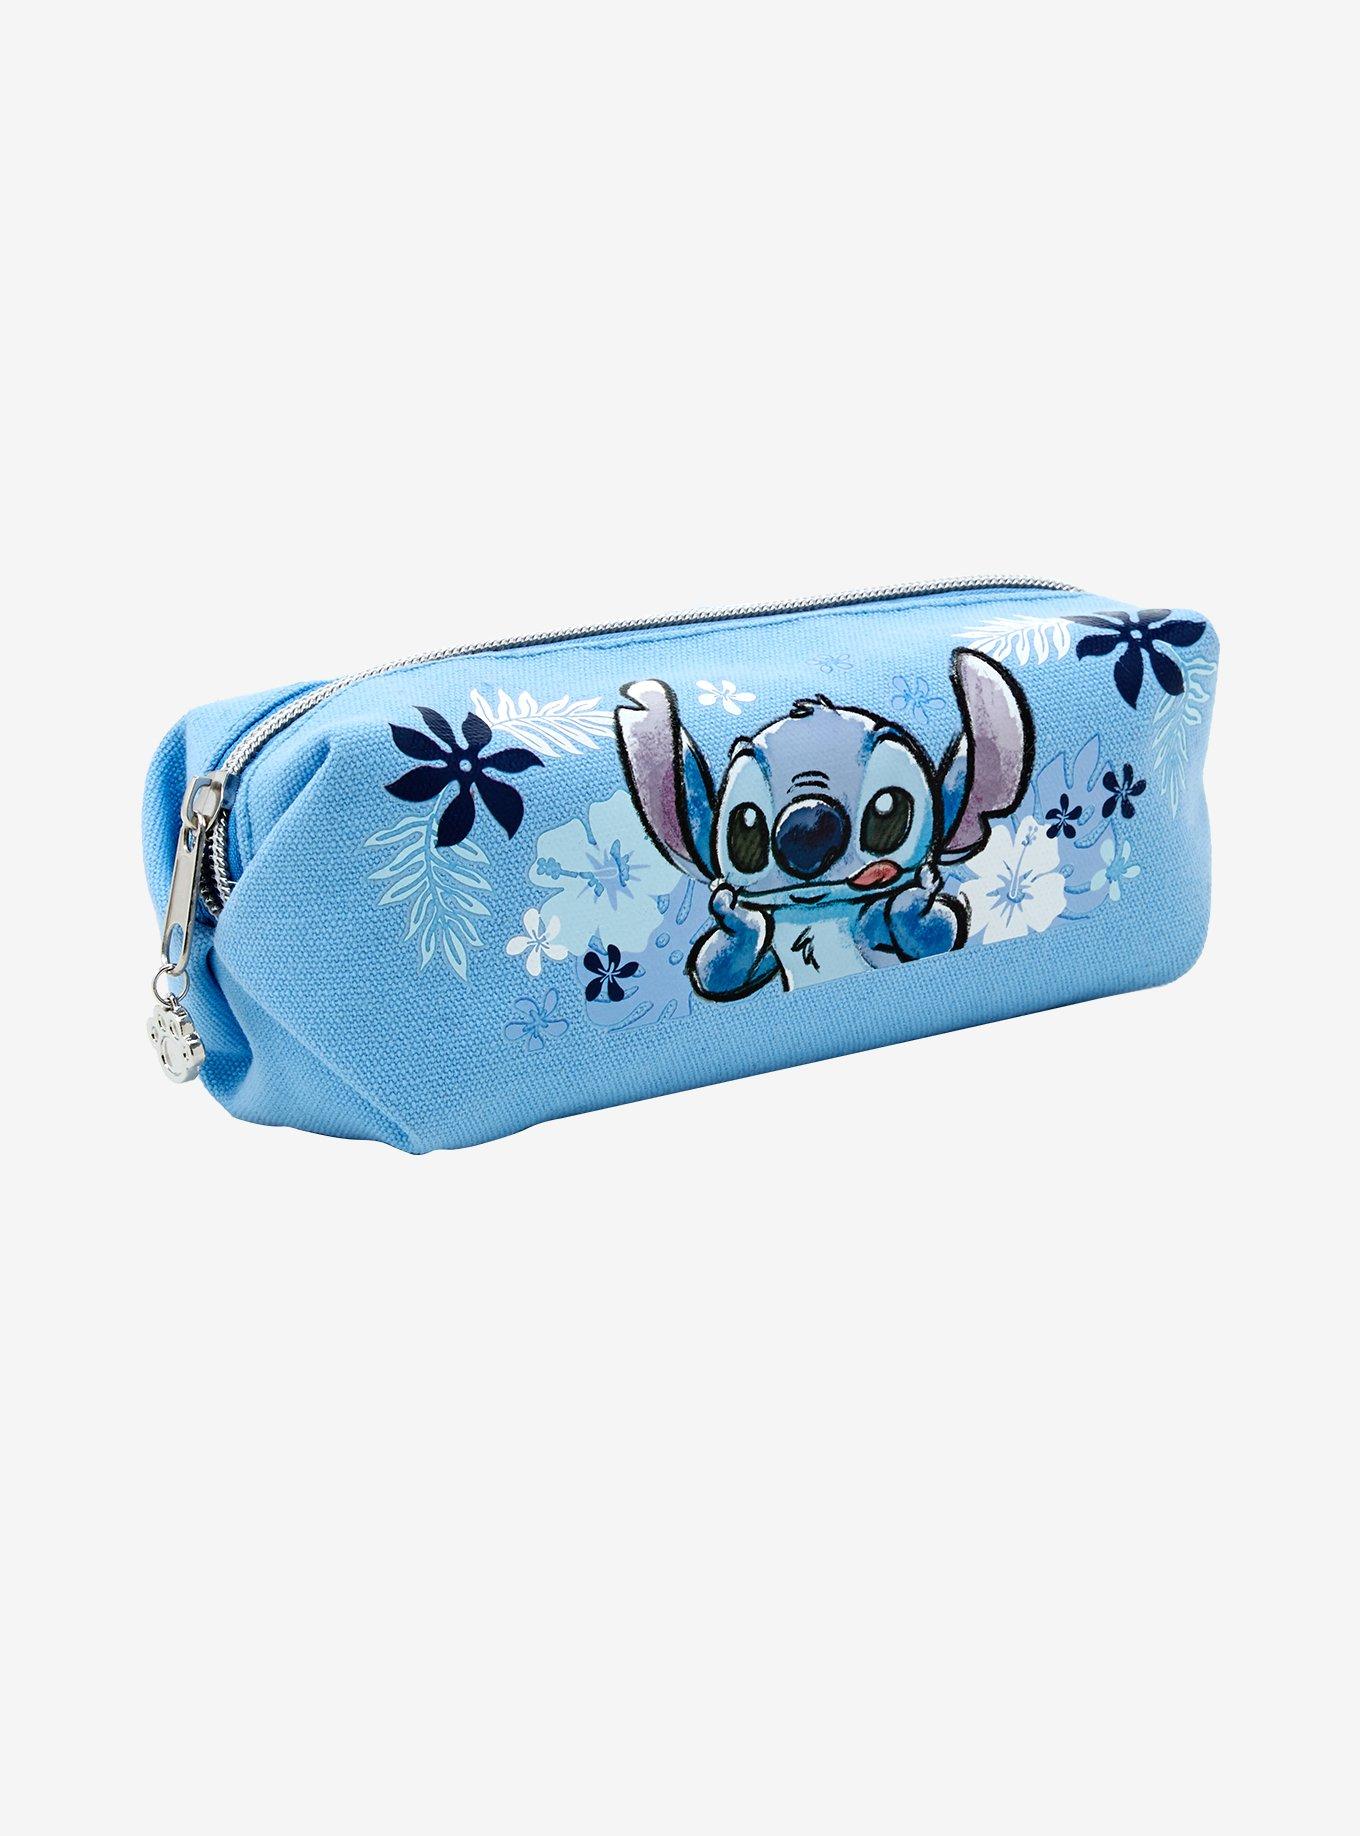 Disney Lilo & Stitch Pencil Pouch